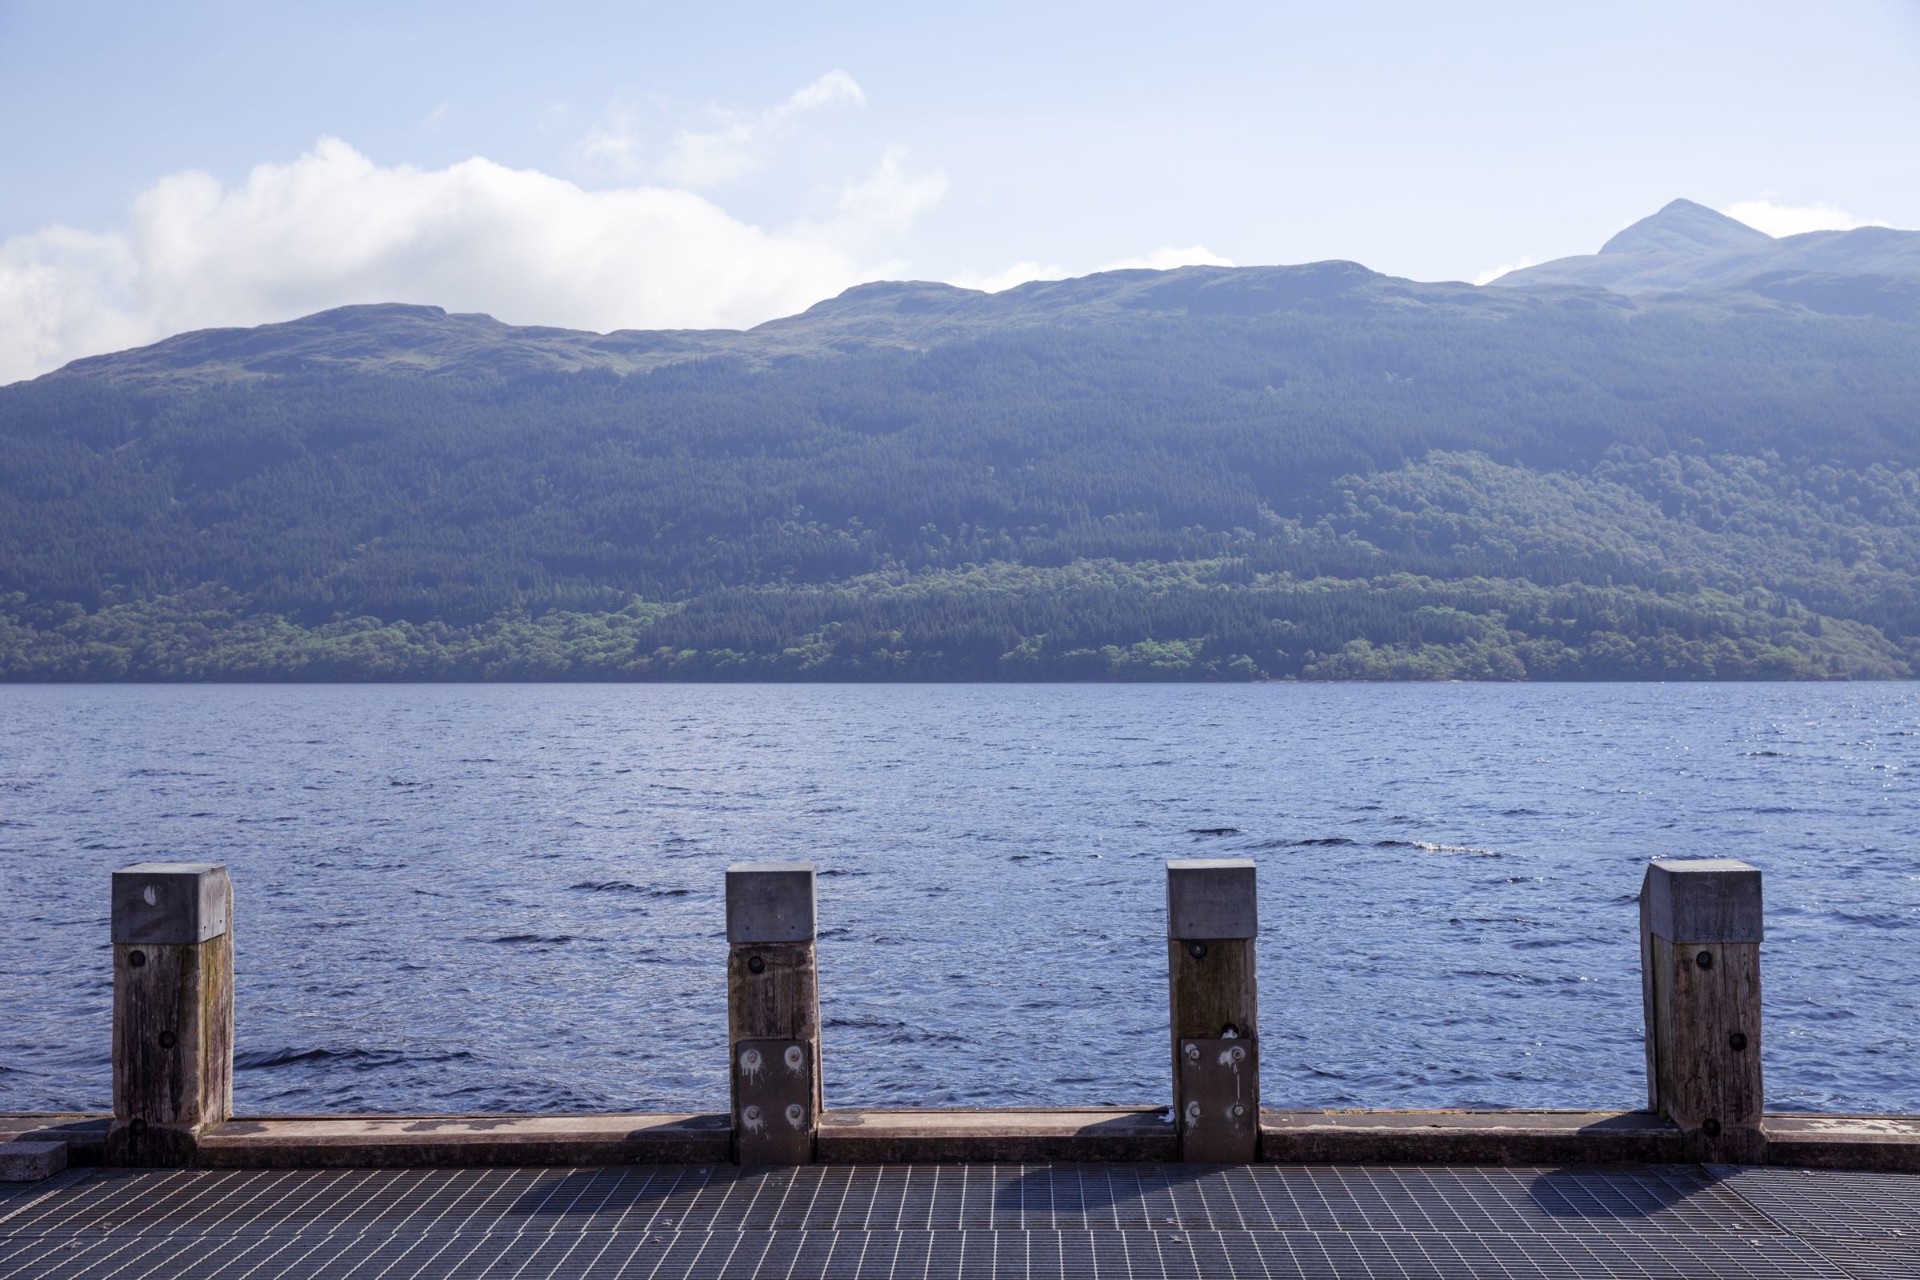 Background image - Loch Lomond